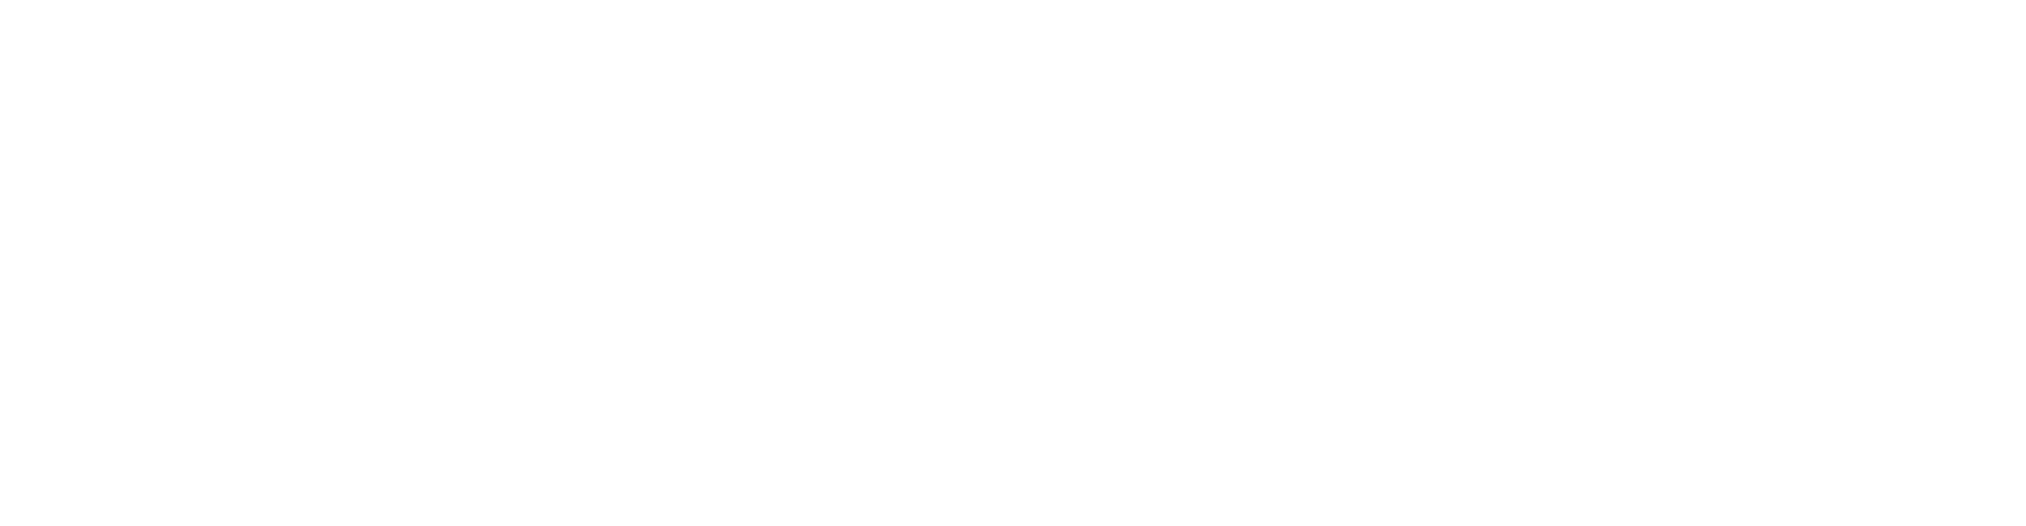 Retirement Renegade